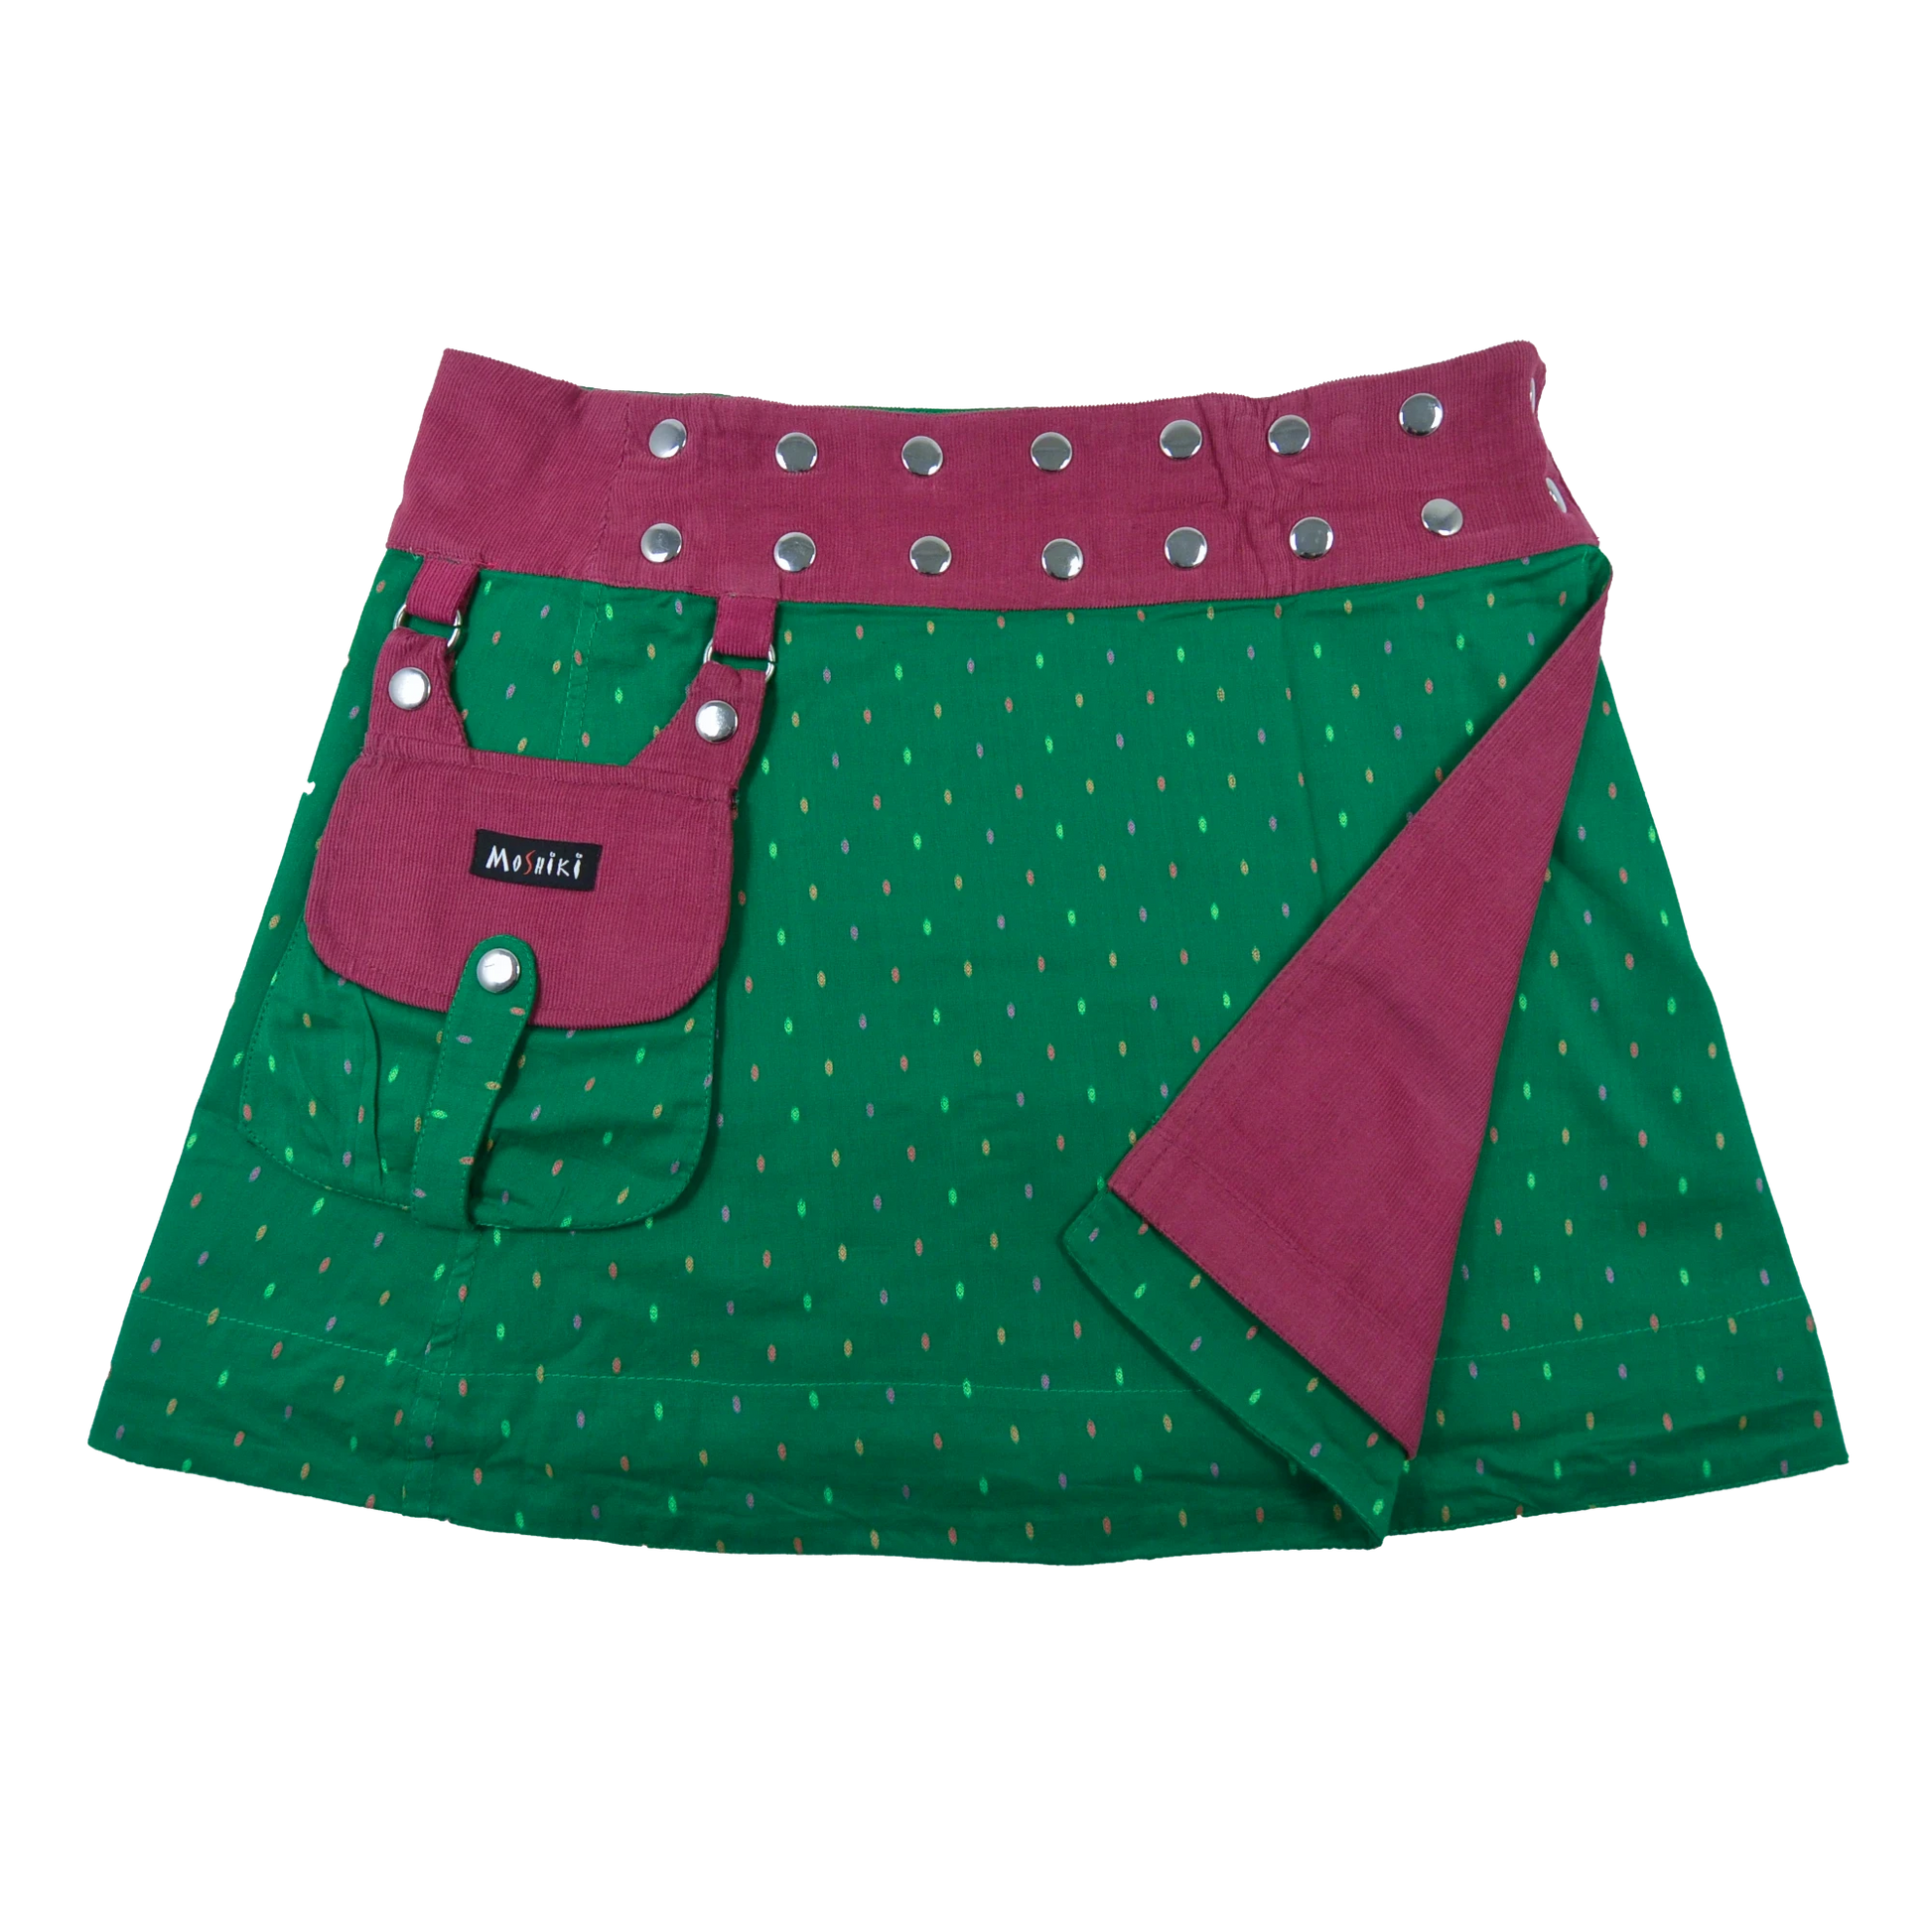 Wenderock aus Baumwolle und Cord, Pink/Grün mit abnehmbarer Tasche. Umfang ist mit einer doppelten Druckknopfleiste am Rockbund einstellbar